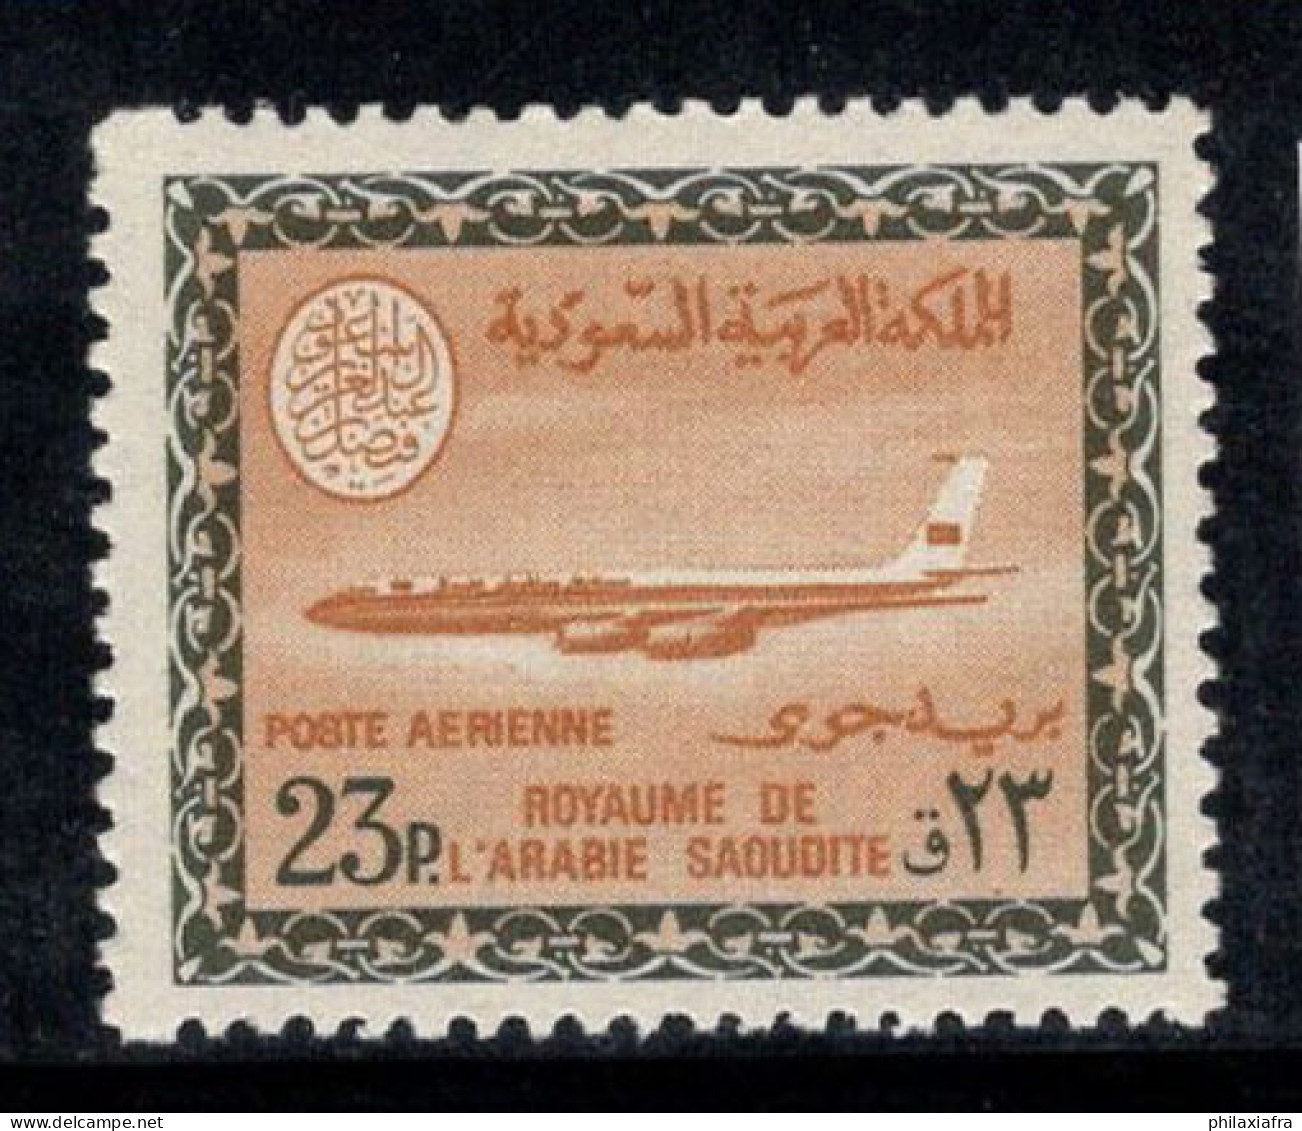 Arabie Saoudite 1966-75 Mi. 375 Y Neuf ** 100% Poste Aérienne 23 Pia, Boeing 720 B - Saudi-Arabien